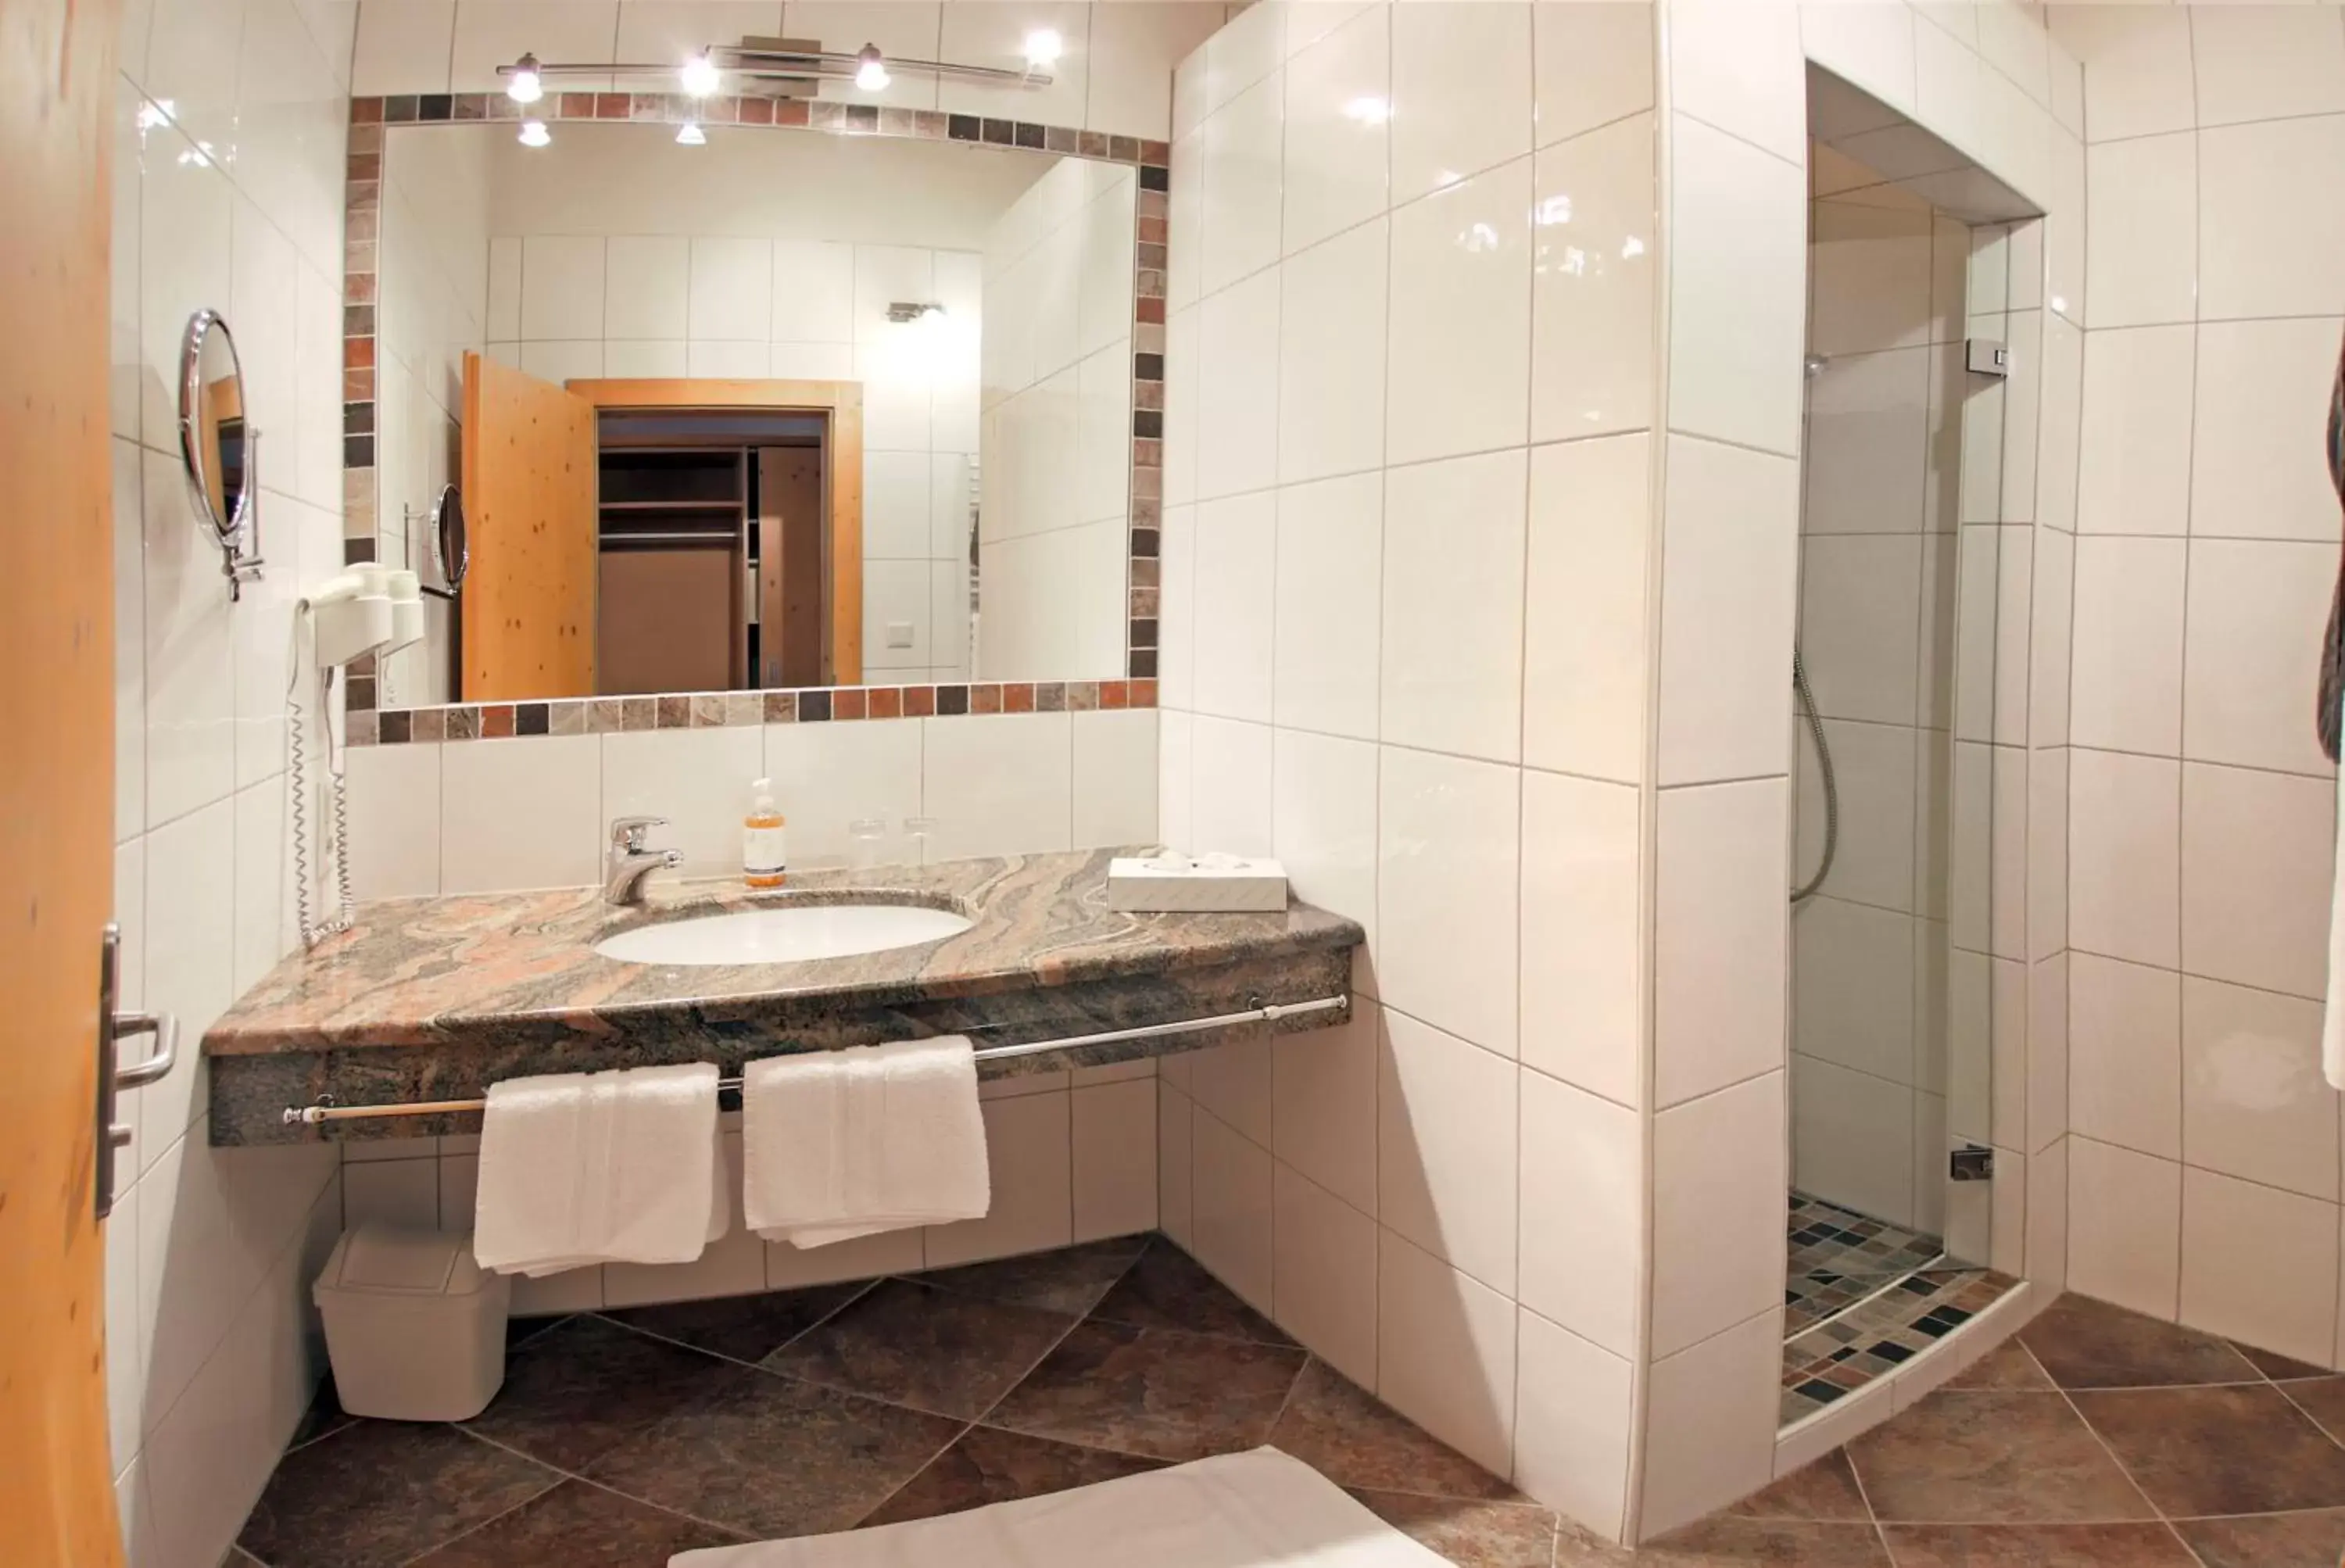 Bathroom in Aktivhotel Waldhof